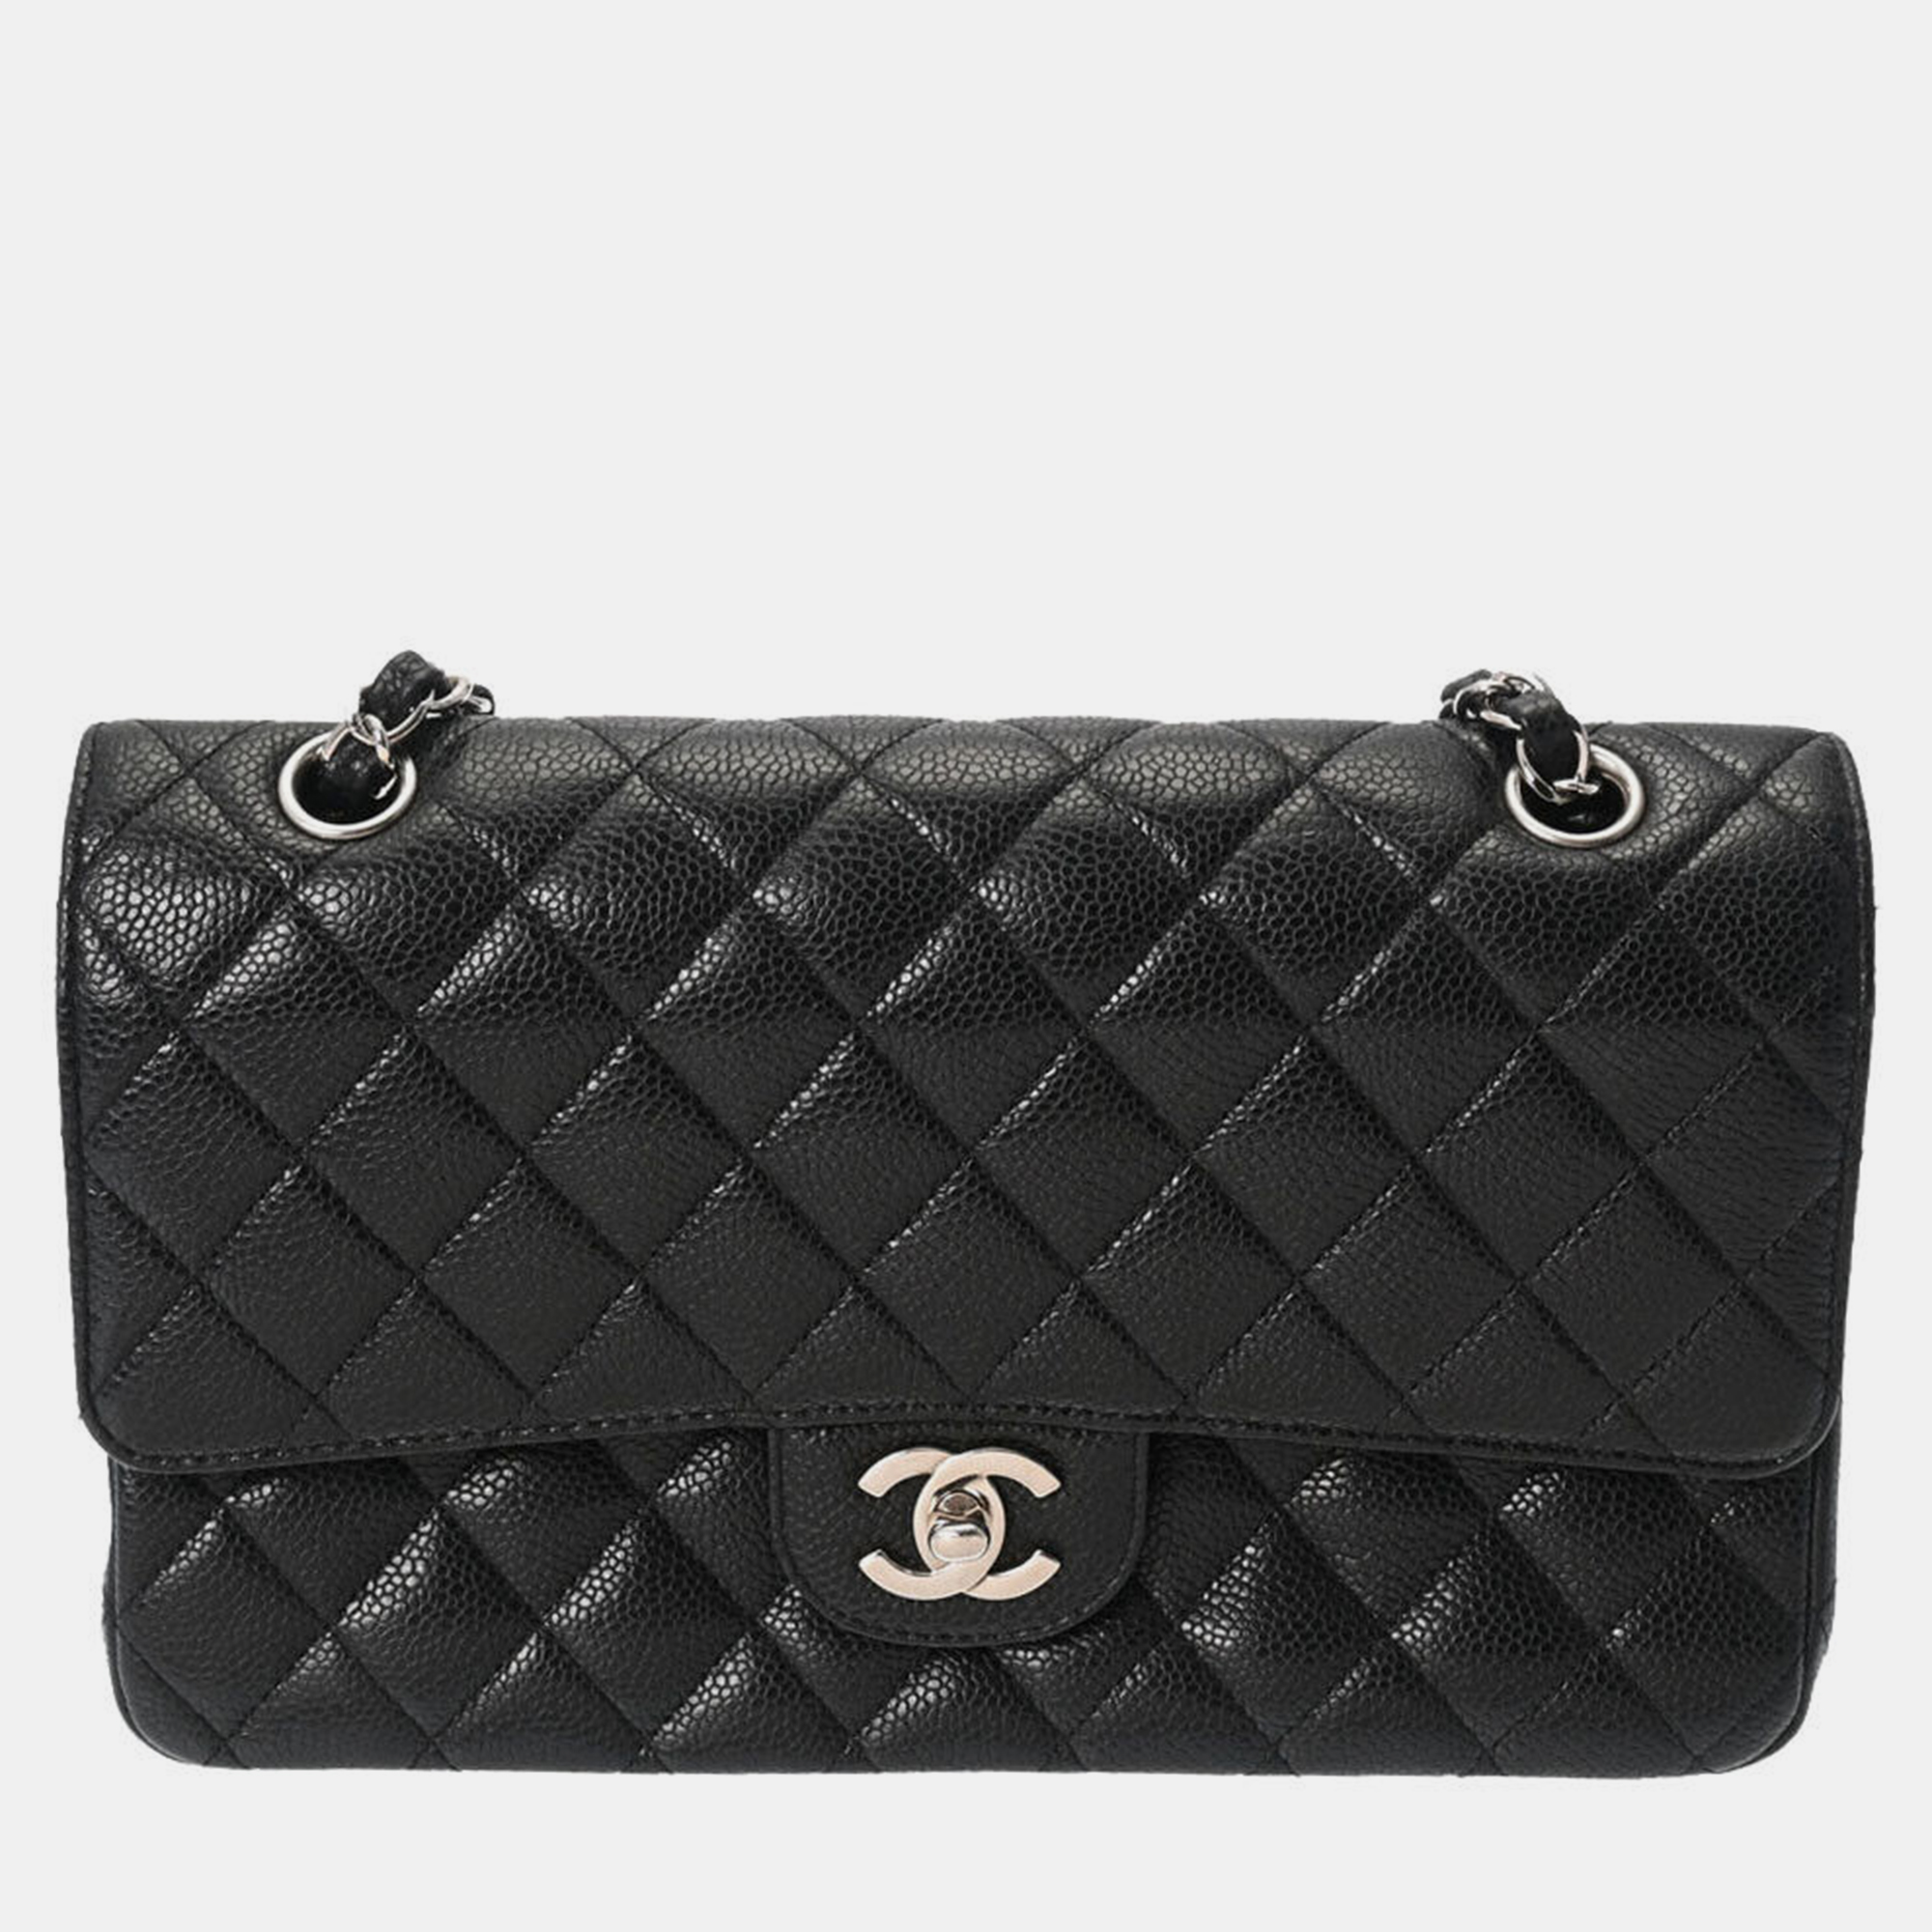 Chanel black caviar leather classic double flap shoulder bag